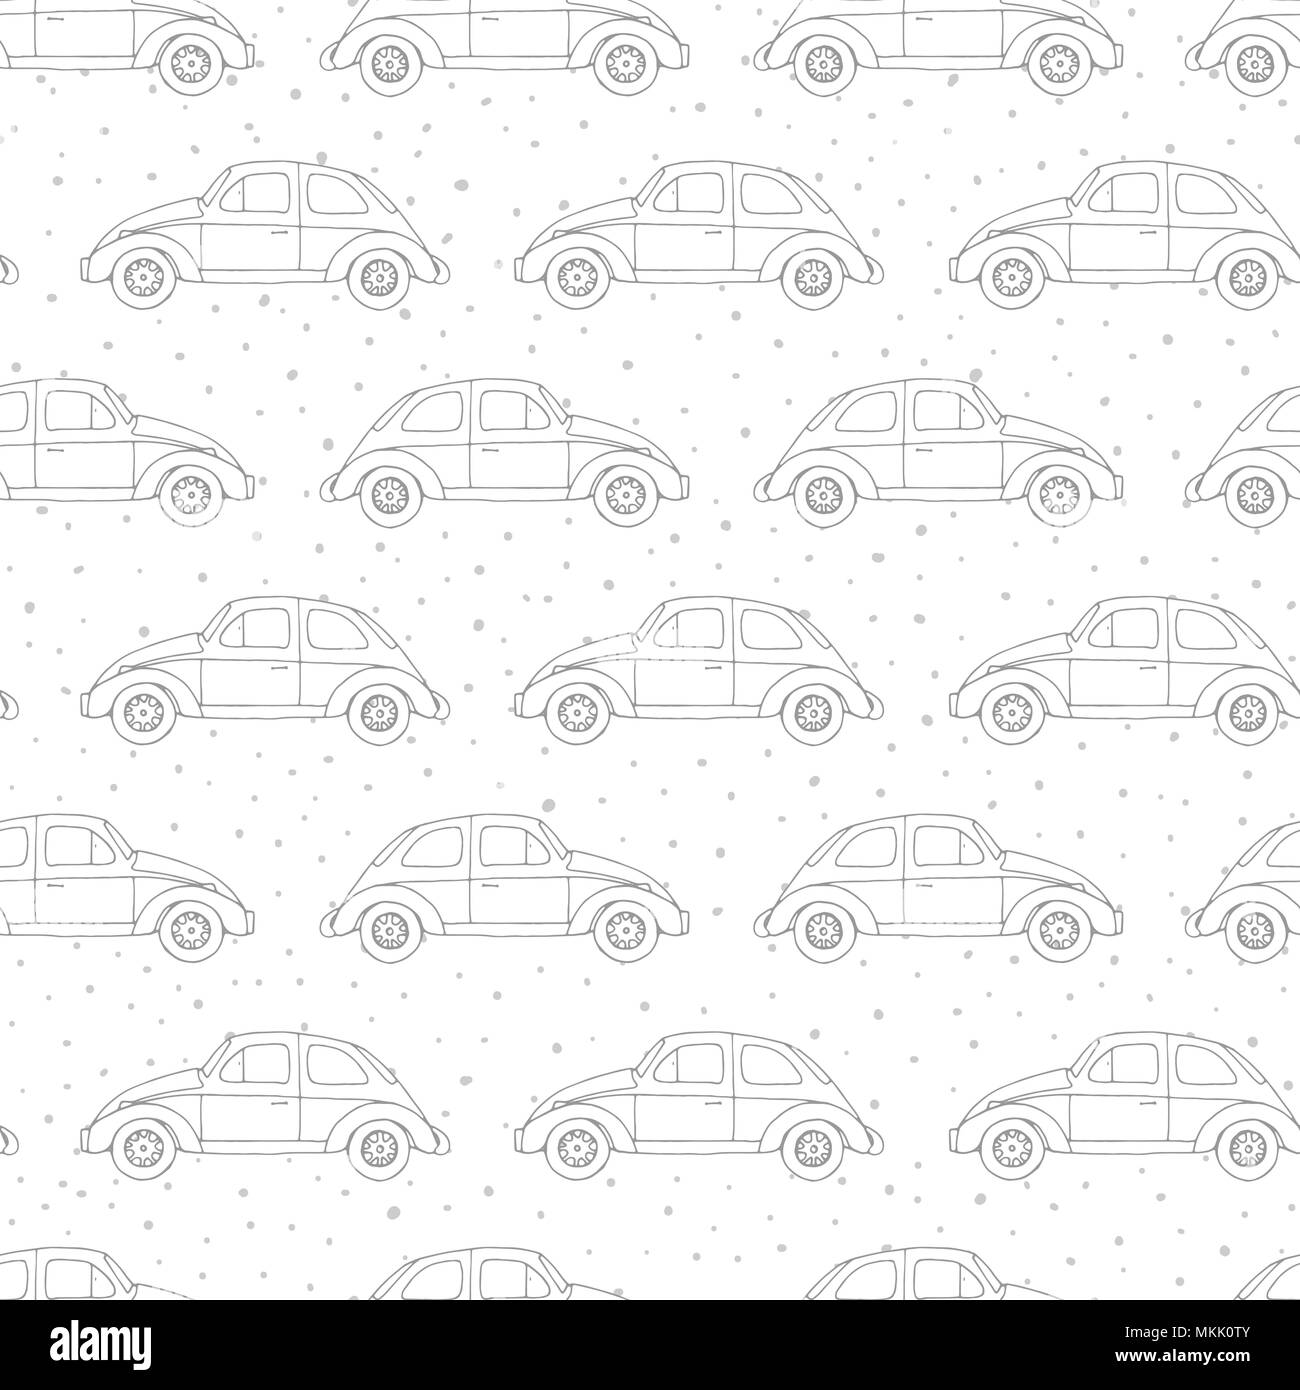 Hand gezeichnet Vektor nahtlose Muster mit retro Autos auf der Polka Dot Hintergrund. Vintage Design. Stock Vektor